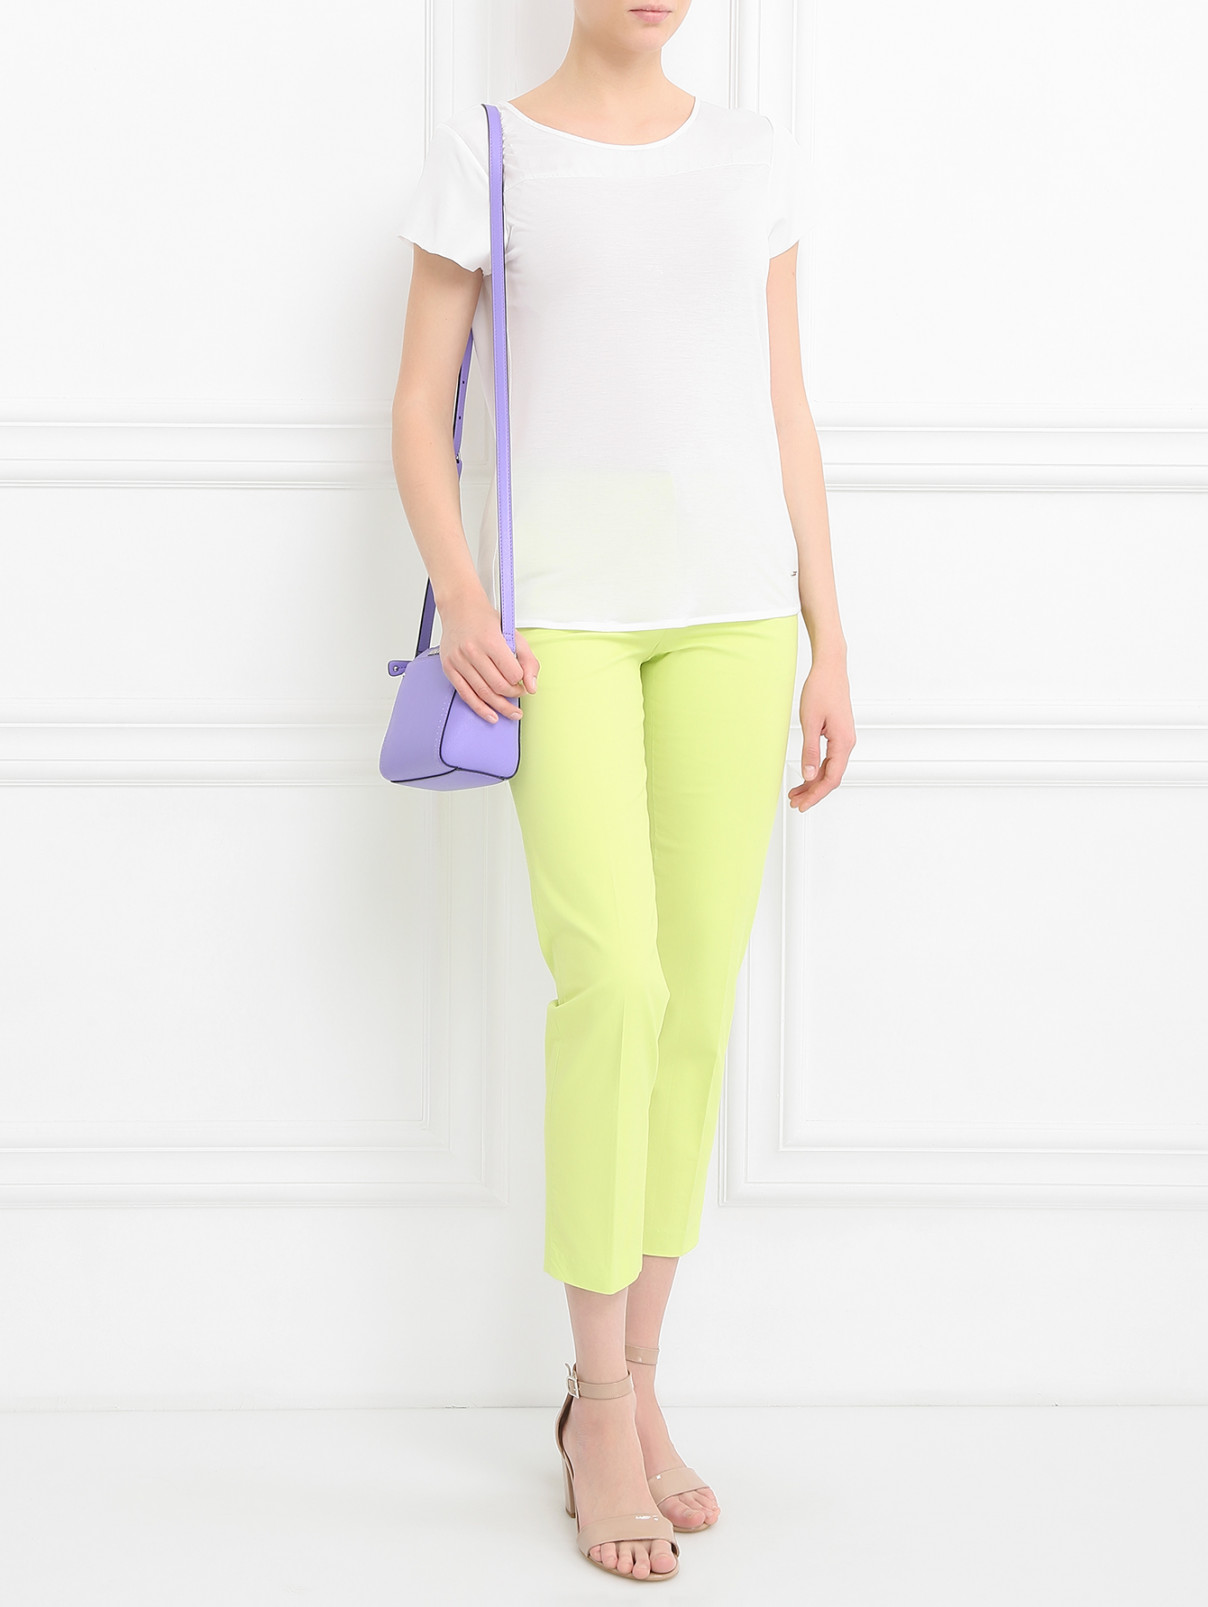 Узкие брюки из хлопка Armani Jeans  –  Модель Общий вид  – Цвет:  Зеленый